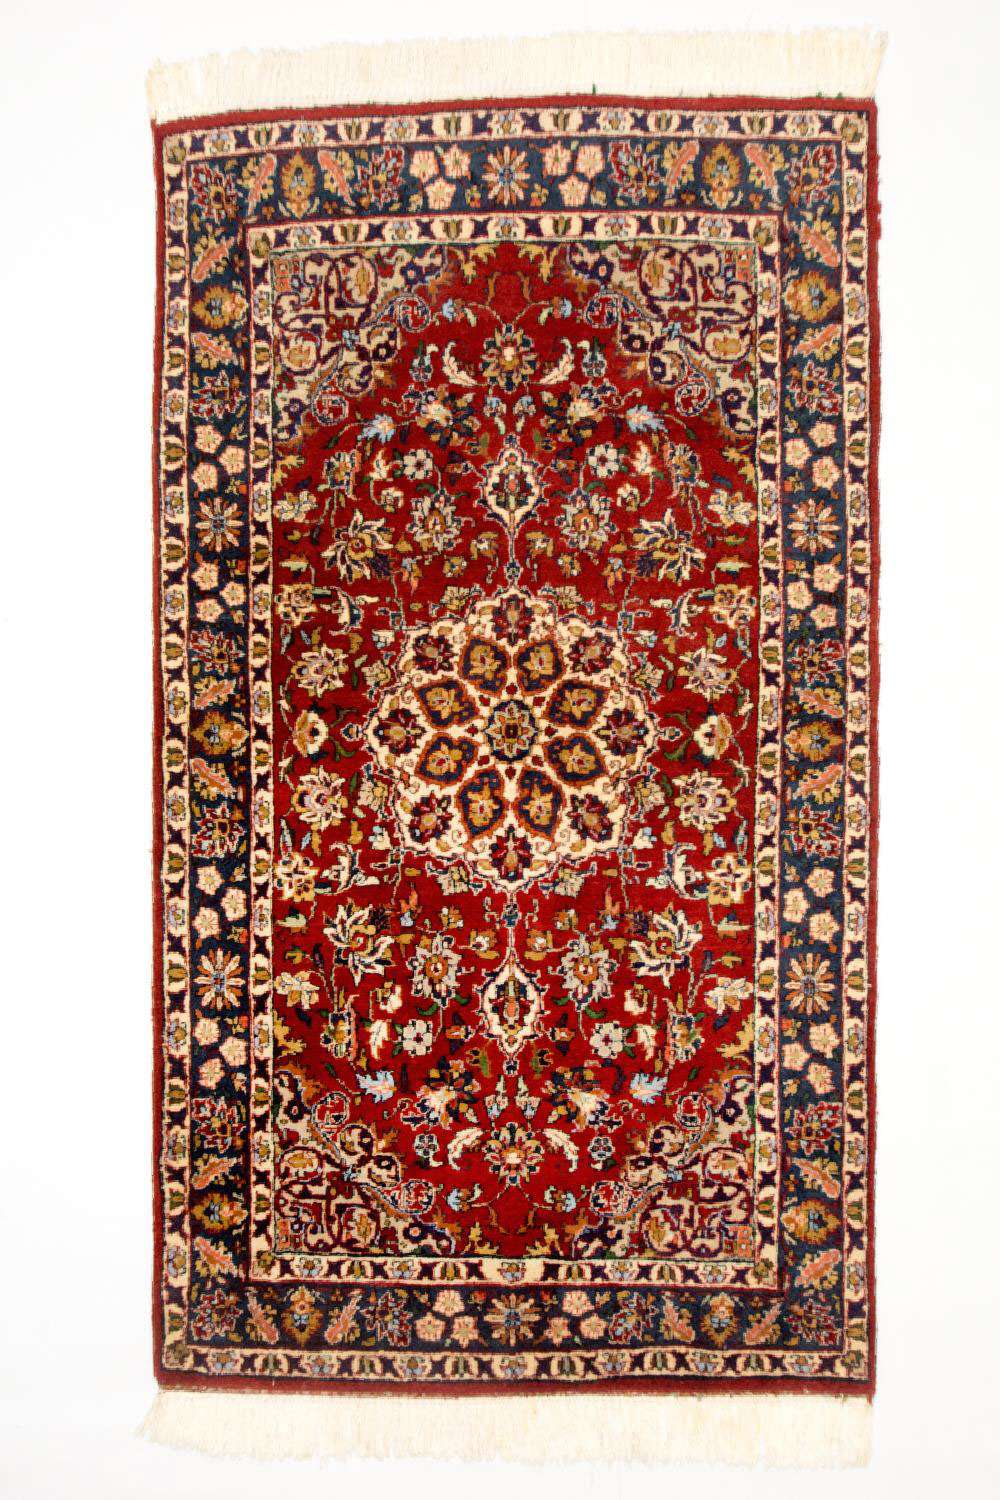 Alfombra persa - Clásica - 154 x 90 cm - rojo